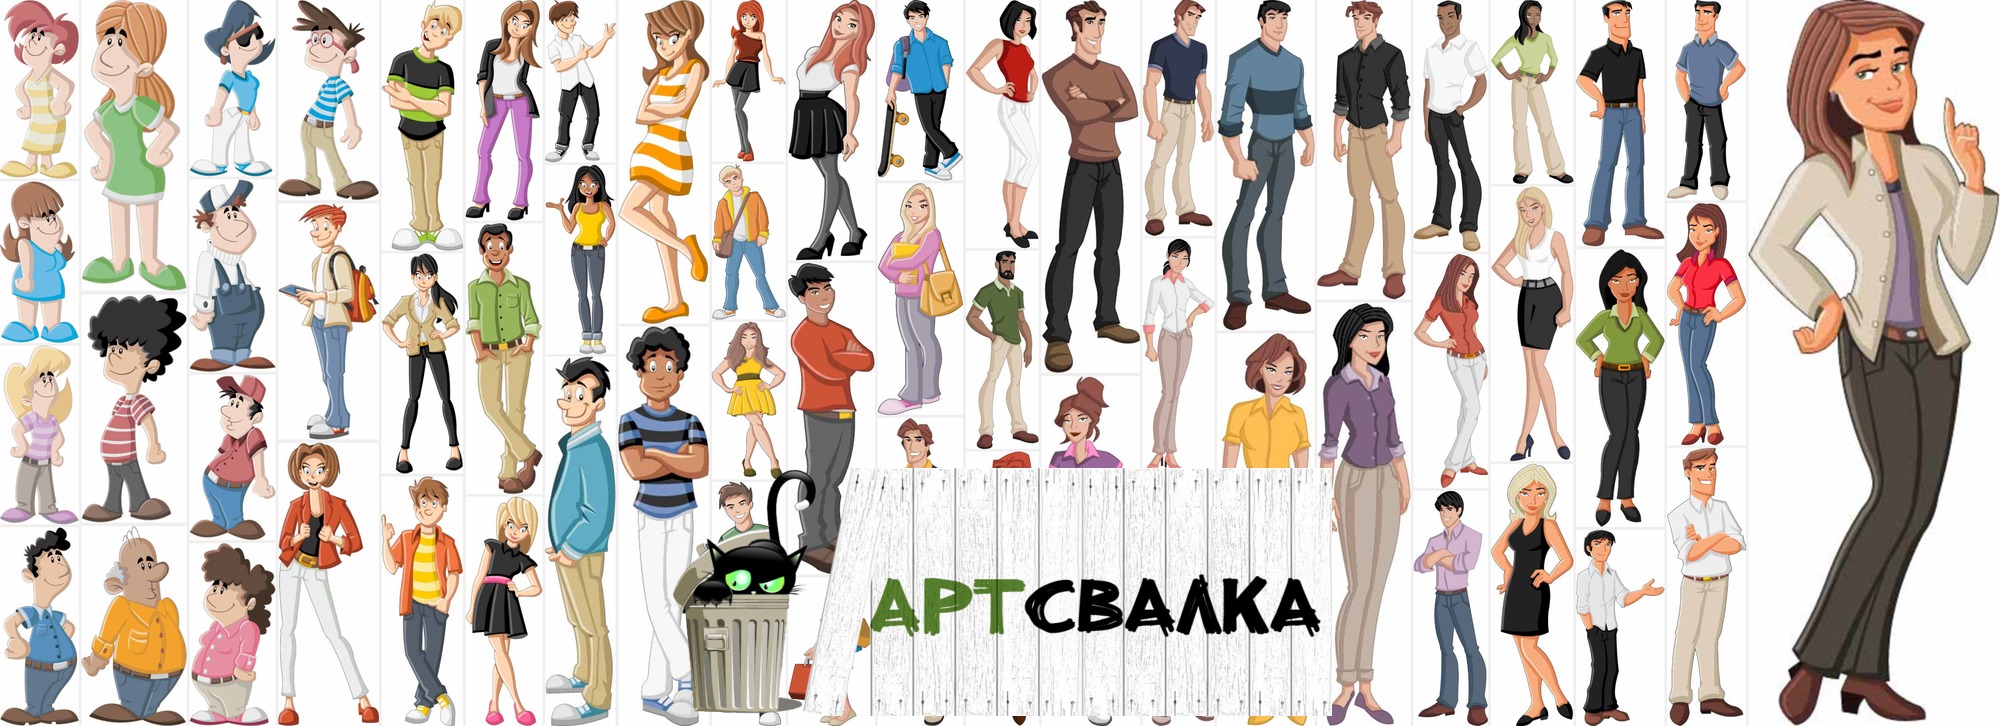 Карикатуры людей в векторе | Cartoons people in vector